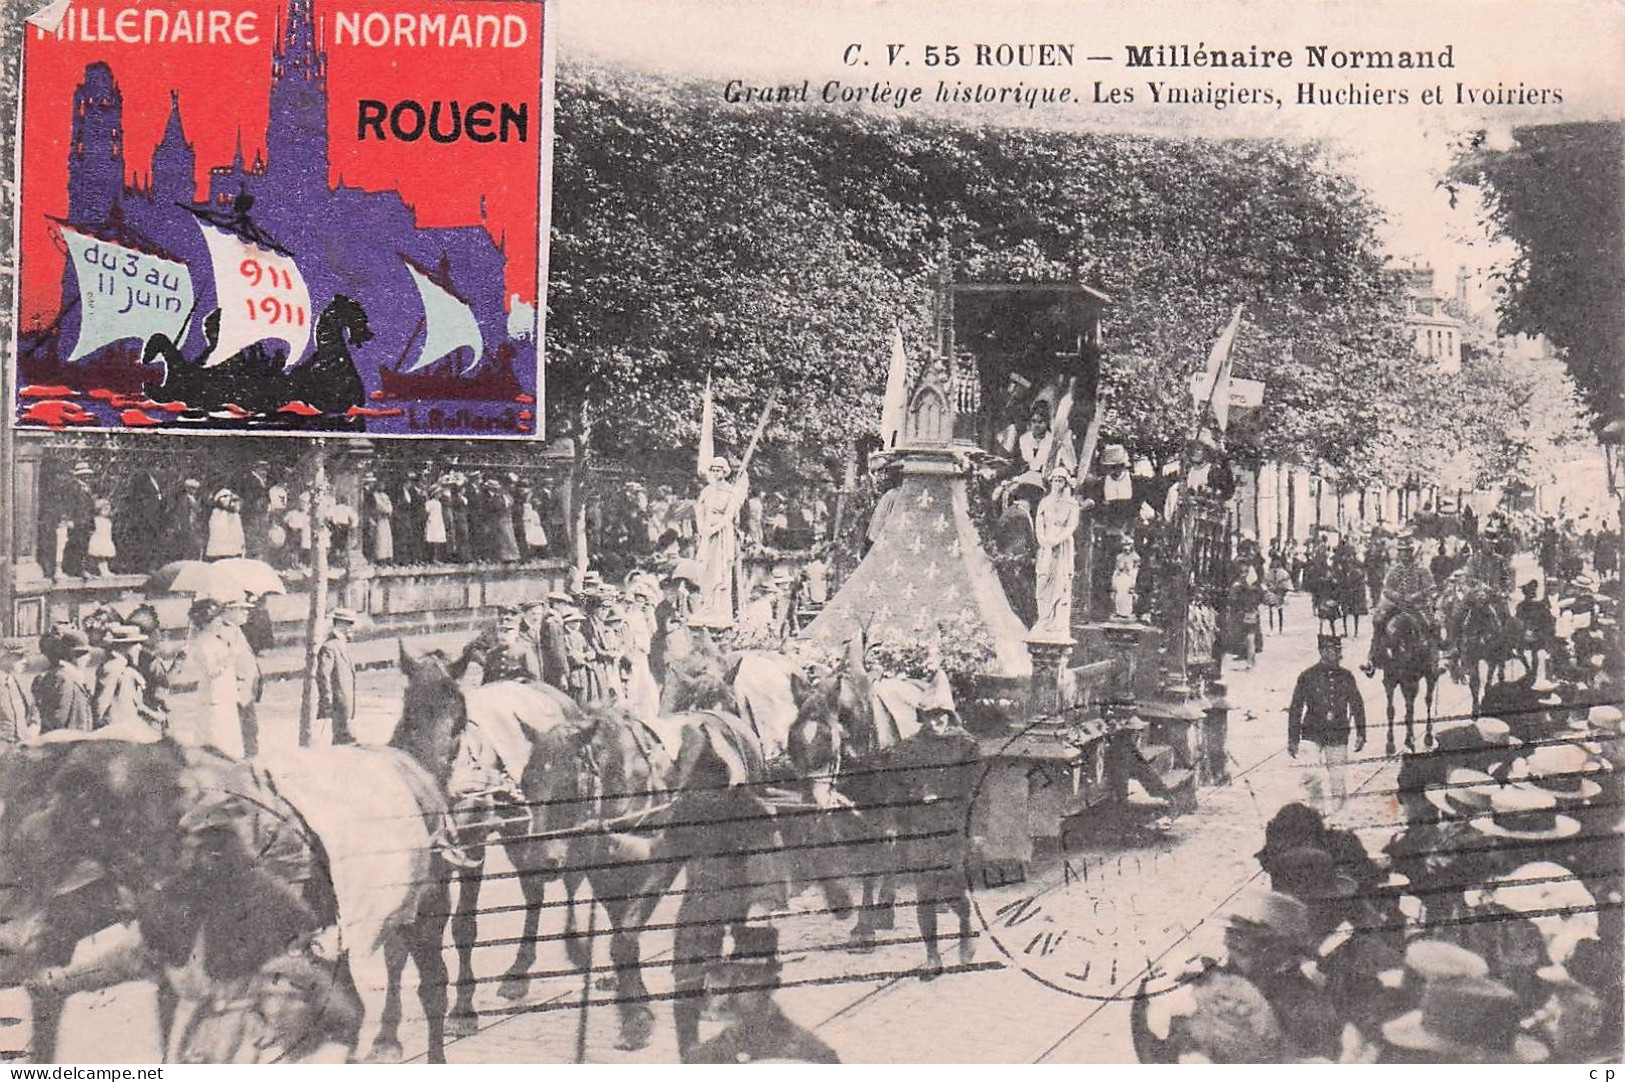 Rouen  -  Millenaire Normand - Les Ymaigiers - Huchiers Et Ivoiriers - Vignette - Erinophilie  -  CPA °J - Rouen